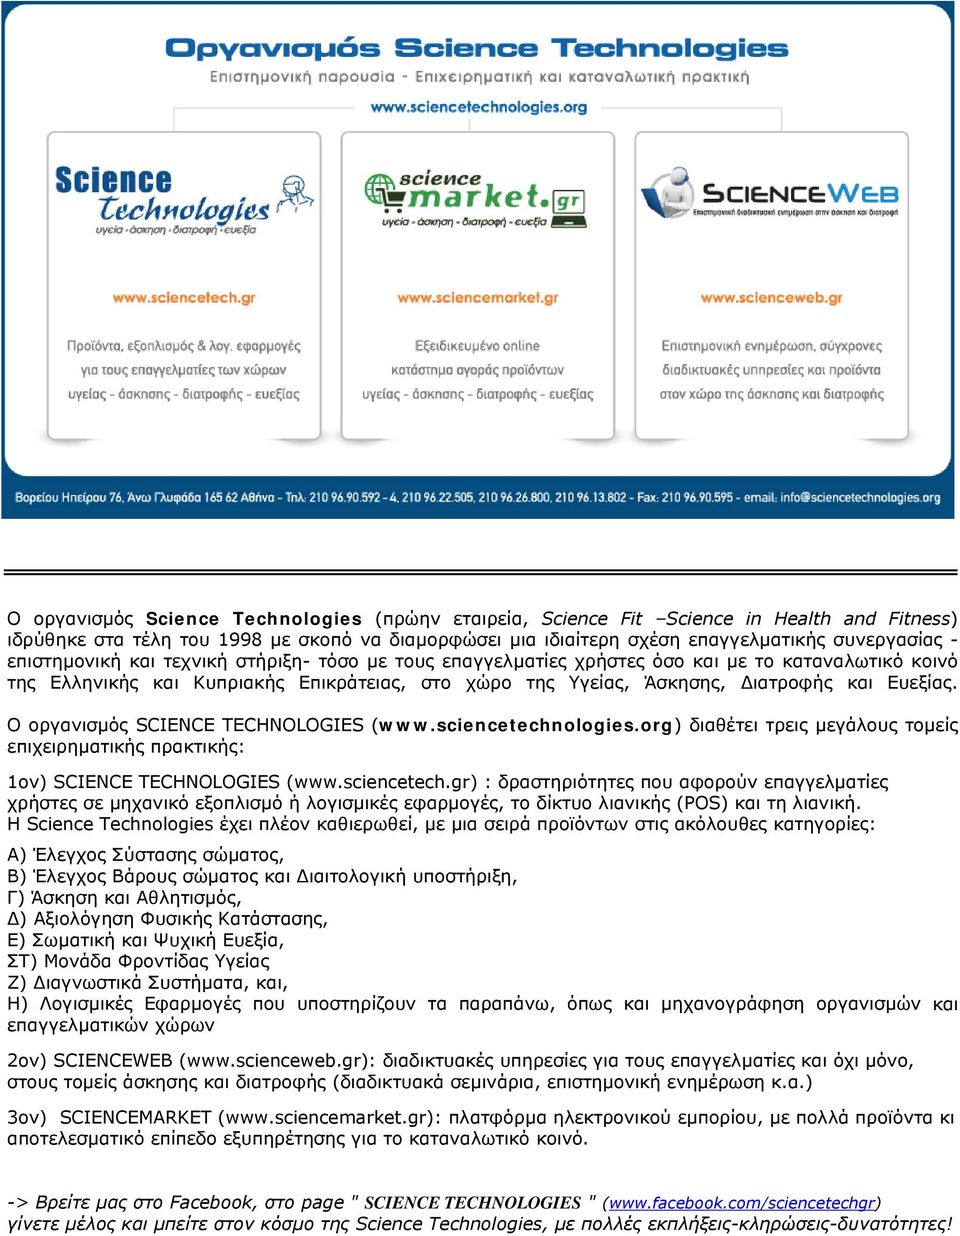 Ο οργανισµός SCIENCE TECHNOLOGIES (www.sciencetechnologies.org) διαθέτει τρεις µεγάλους τοµείς επιχειρηµατικής πρακτικής: 1ον) SCIENCE TECHNOLOGIES (www.sciencetech.gr) : δραστηριότητες που αφορούν επαγγελµατίες χρήστες σε µηχανικό εξοπλισµό ή λογισµικές εφαρµογές, το δίκτυο λιανικής (POS) και τη λιανική.